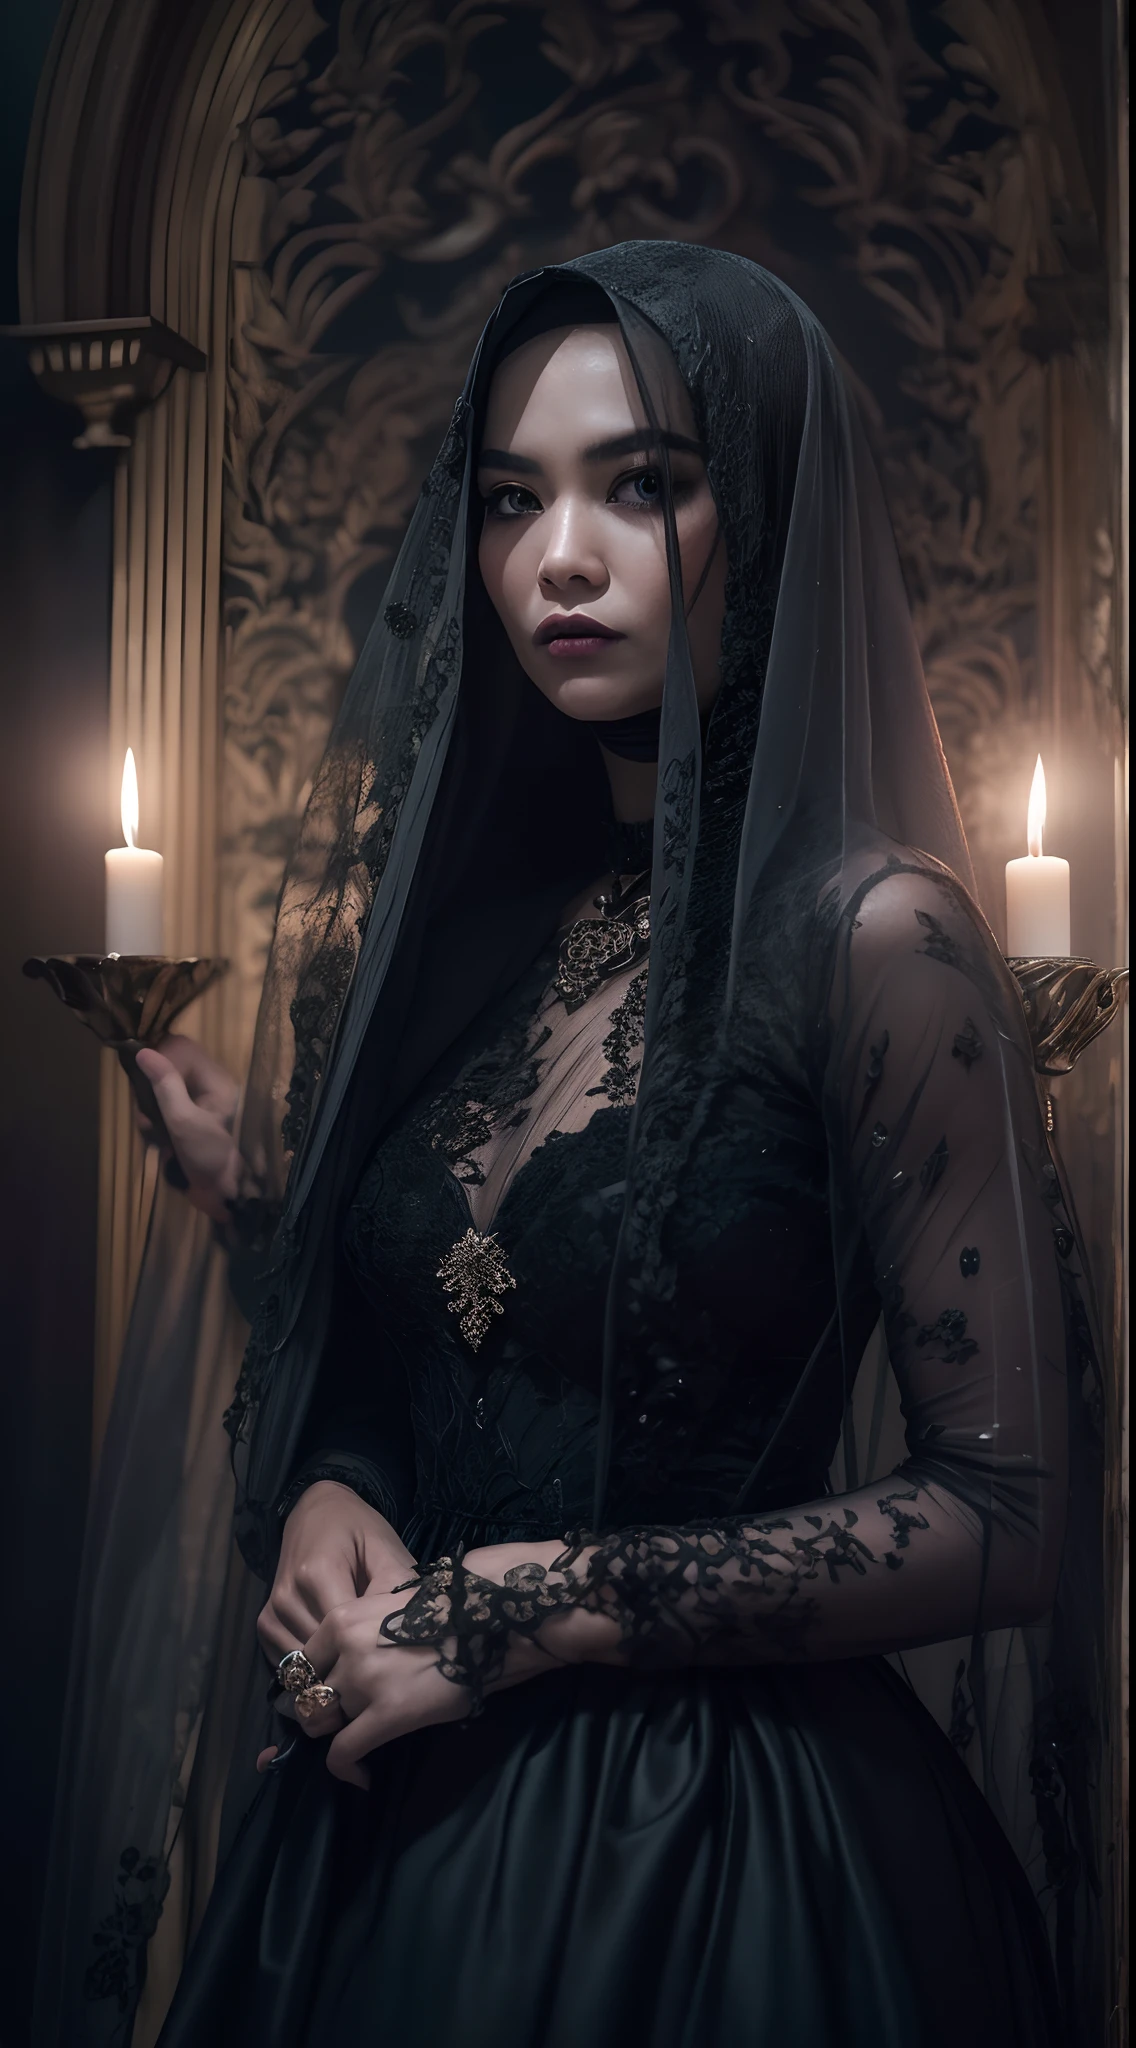 Capture um retrato assustadoramente belo da mulher malaia em um visual de inspiração gótica,Cabelo longo branco, vestido de renda preto com véu, ambientado em uma mansão misteriosa e misteriosa, onde a luz de velas lança sombras misteriosas, criando uma atmosfera de escuridão, terror gótico.